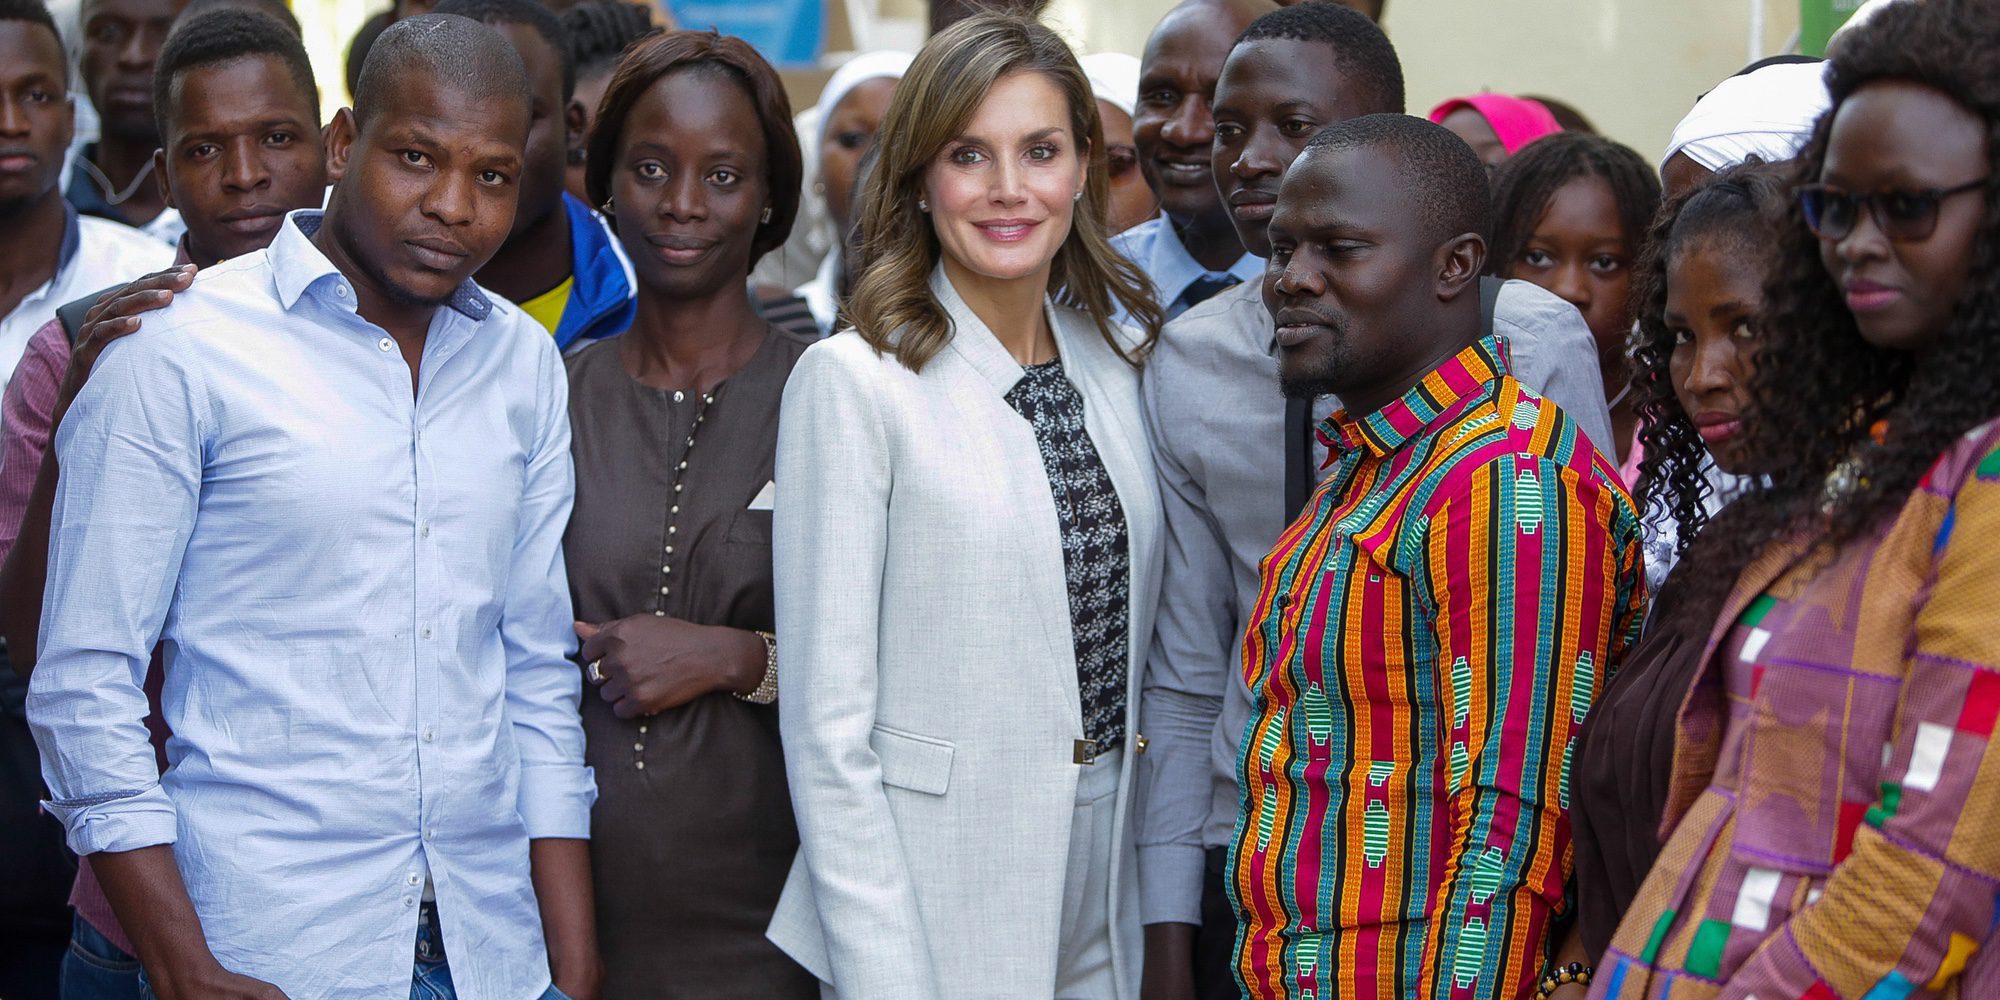 La Reina Letizia, emocionada en su viaje de cooperación a Senegal por el cariño recibido